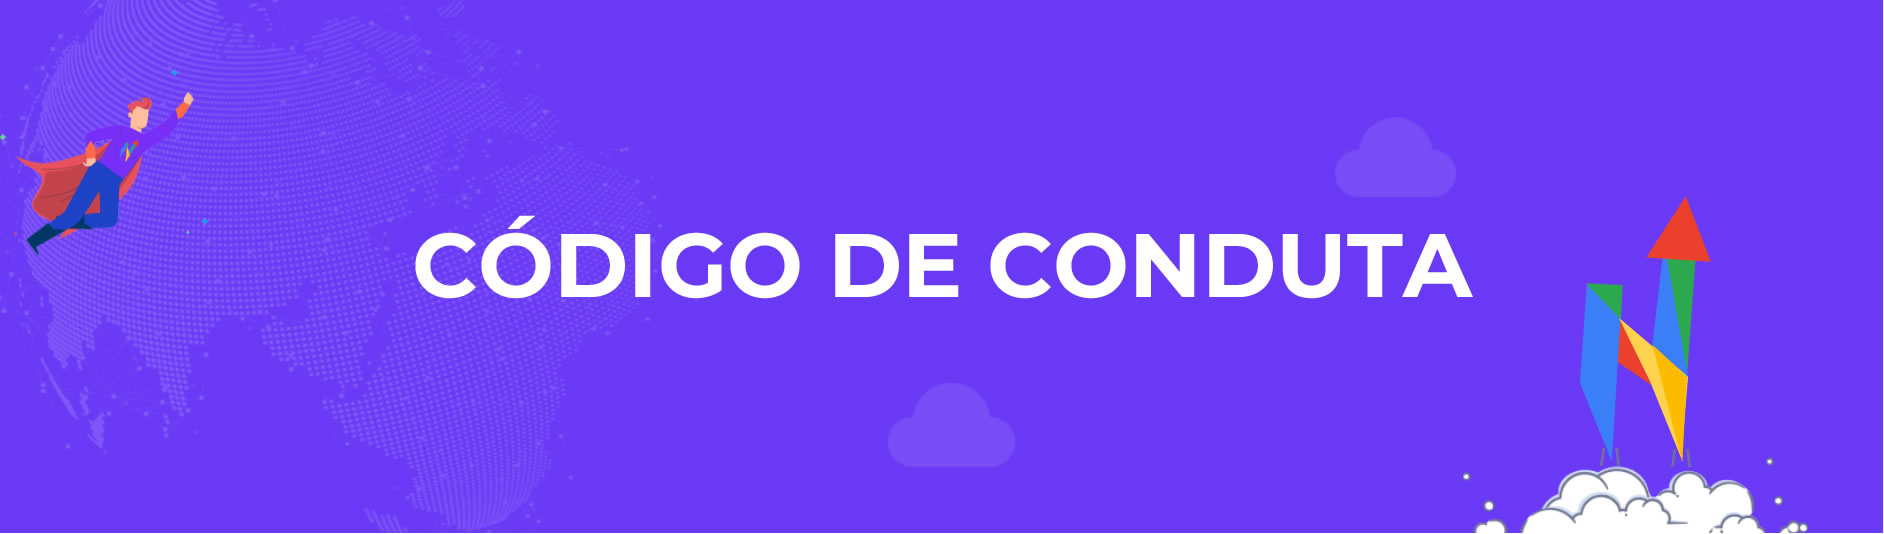 Banner_CODIGO DE CONDUTA_Hinalytics